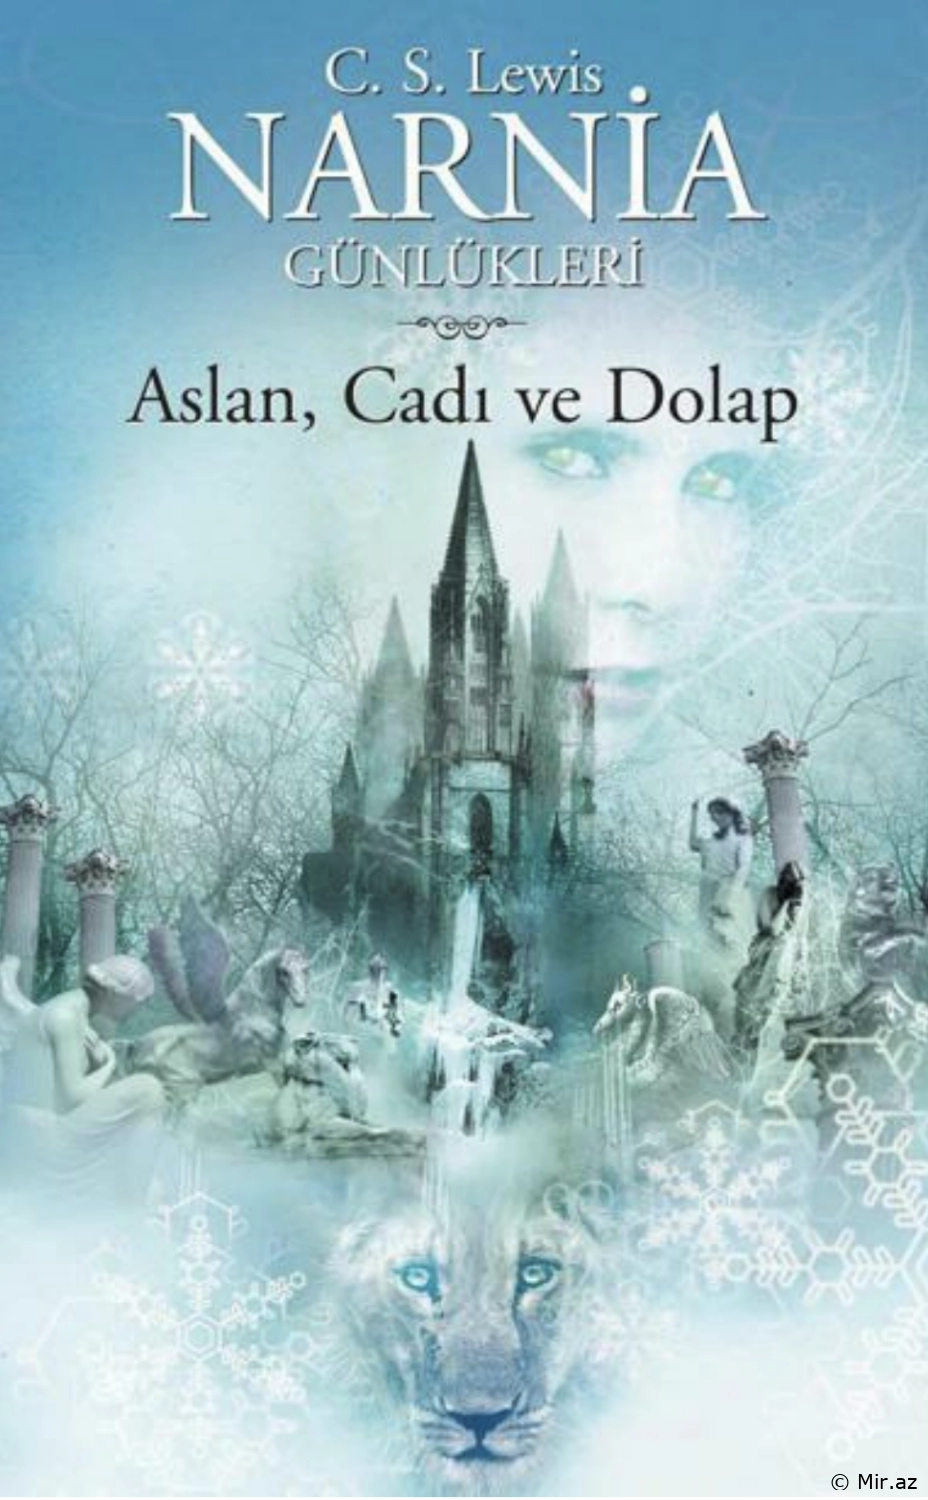 Clive Staples Lewis "Aslan, Cadı ve Dolap Narnia günlükleri 2" PDF